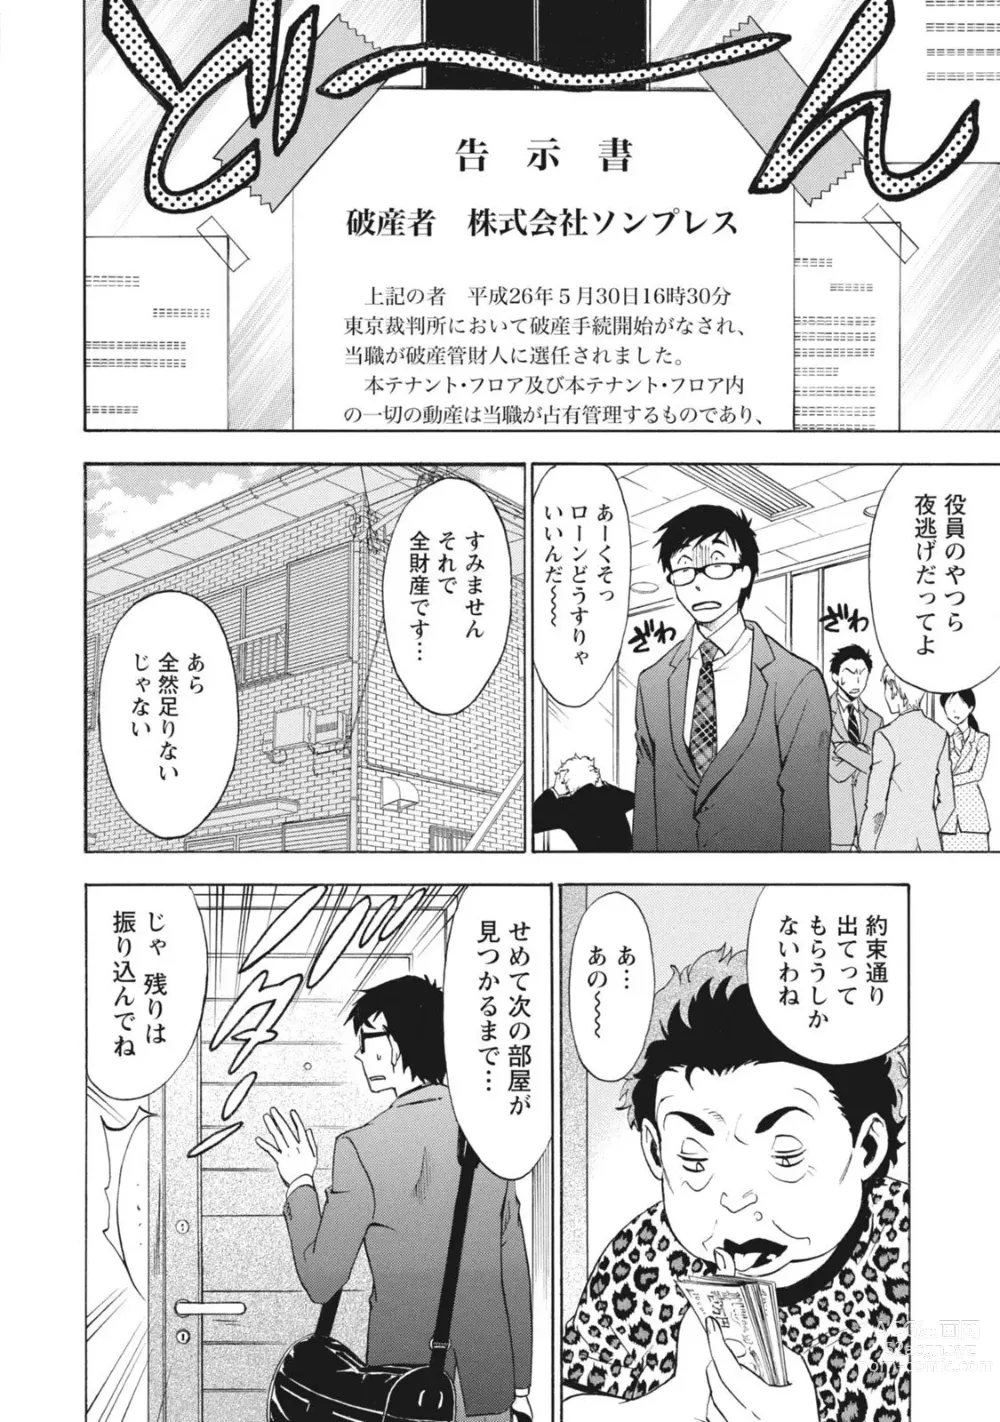 Page 10 of manga Nisekon!